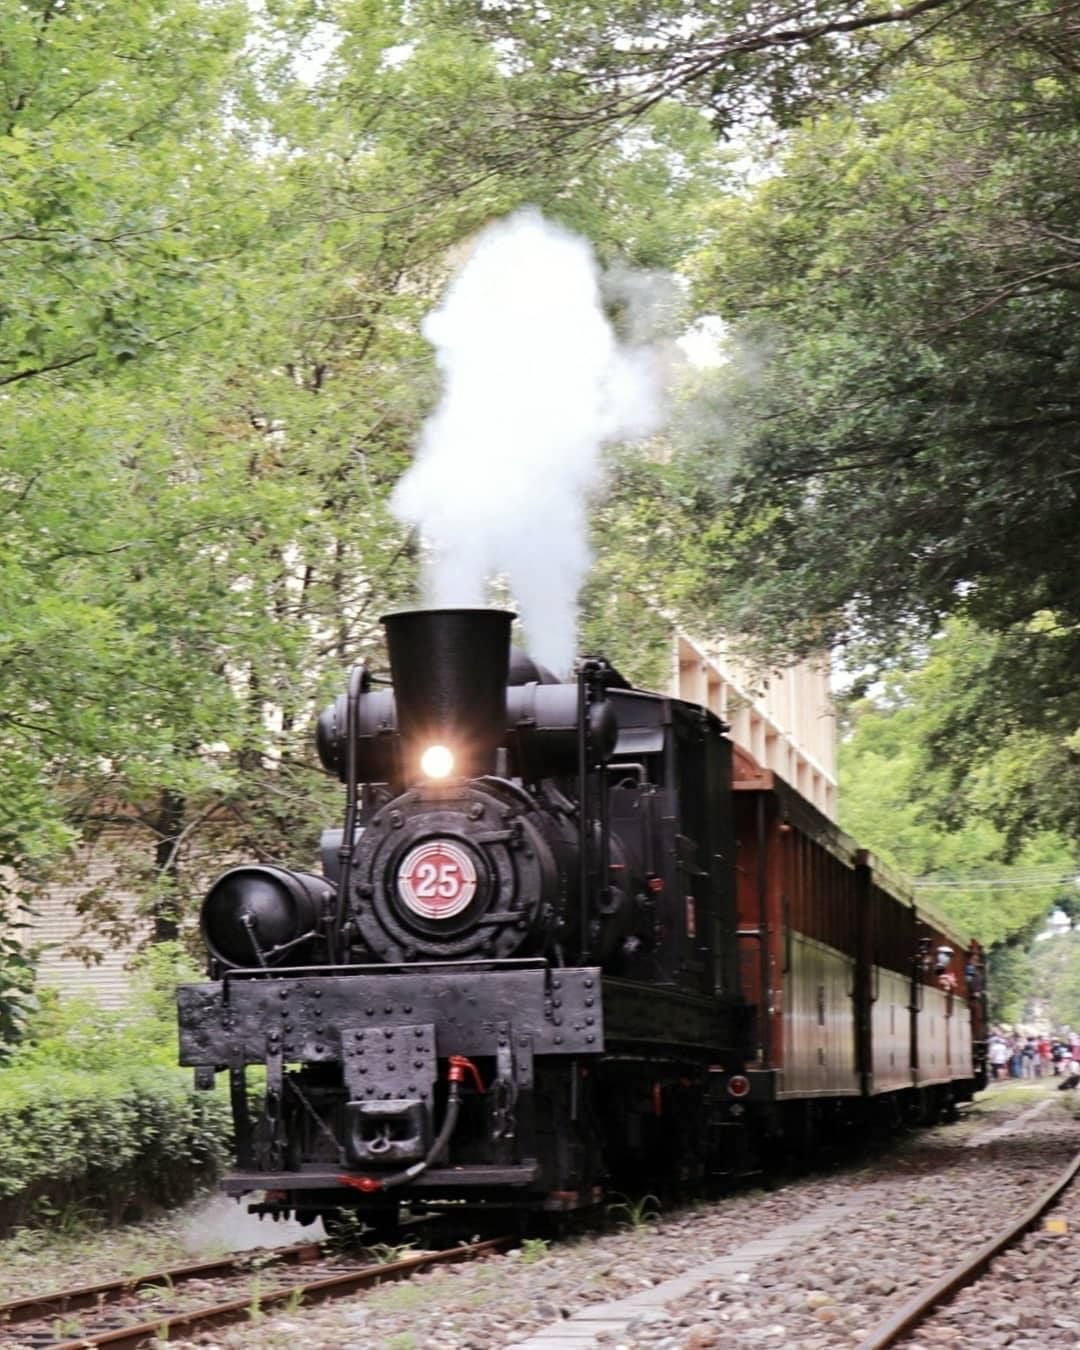 國寶級蒸汽火車能夠親眼看到行駛在阿里山鐵路上真的是太震撼了！就像從魔法世界穿越過來一樣-⠀⠀⠀⠀⠀⠀⠀⠀⠀⠀⠀感謝 @sunny_...